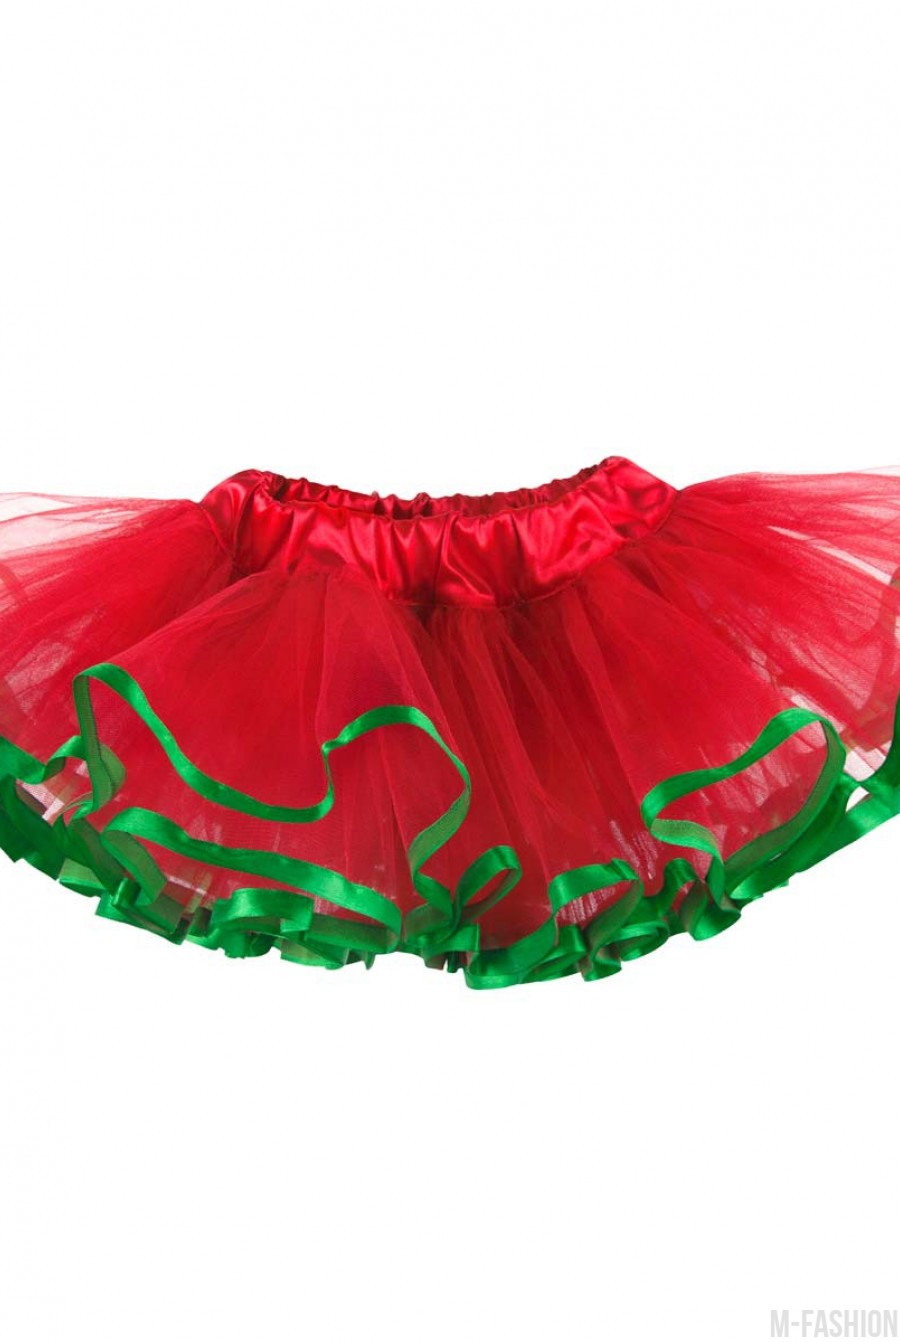 Красная многослойная юбка-пачка из фатина с зеленой тесьмой - Фото 1